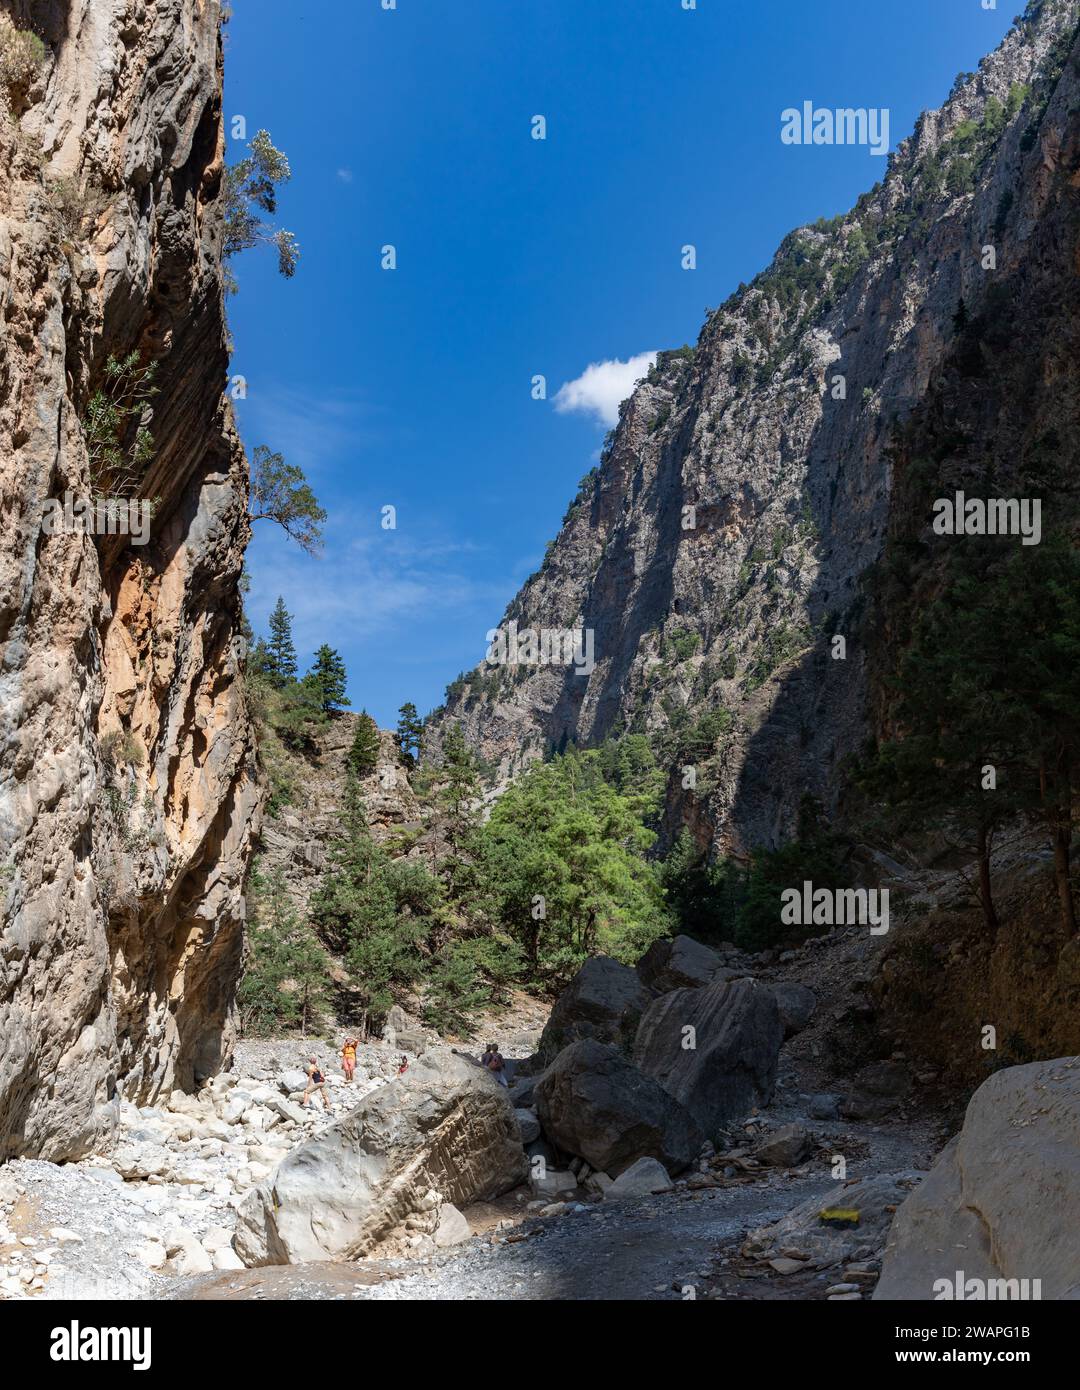 Ein Bild der klassischen Landschaft der Samaria-Schlucht mit Felsen auf dem Boden und umliegenden Bäumen und Bergen. Stockfoto